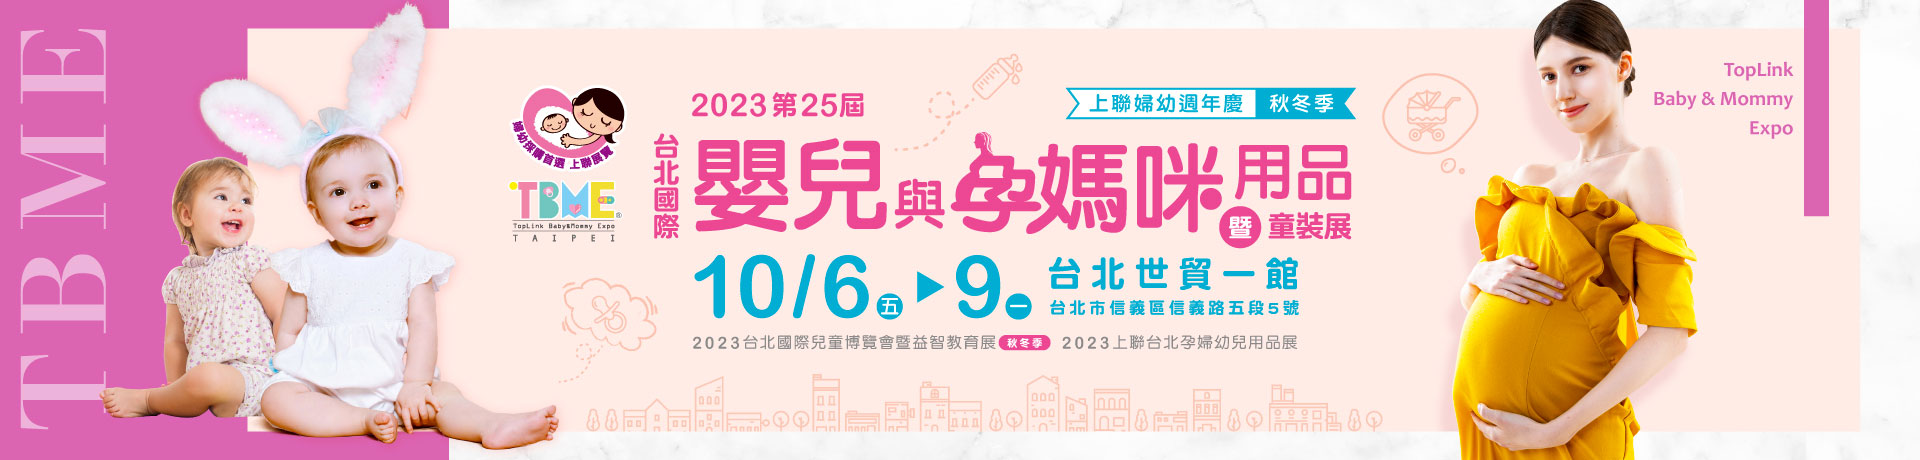 第25屆台北國際嬰兒與孕媽咪用品展(秋冬季)